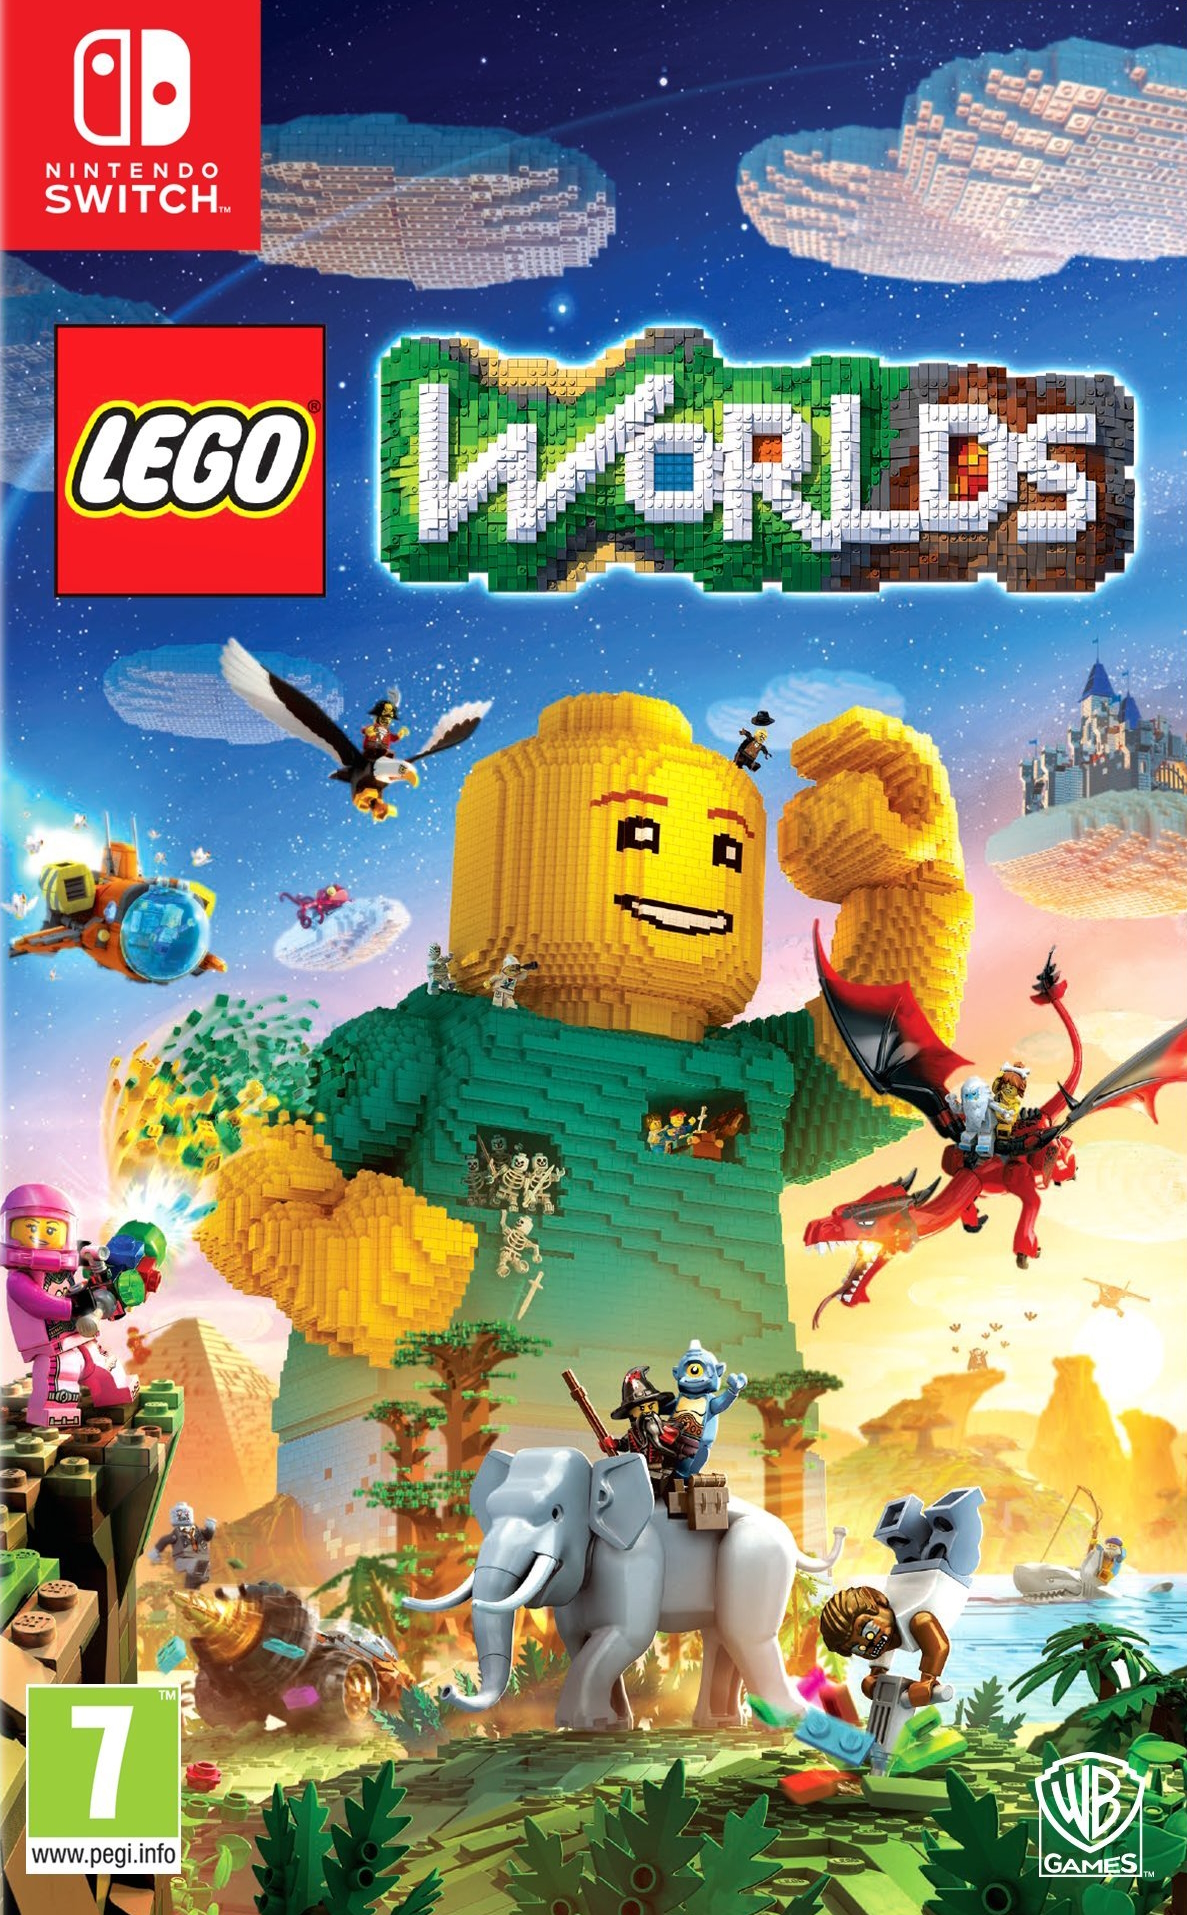 jaquette reduite de LEGO Worlds sur Switch